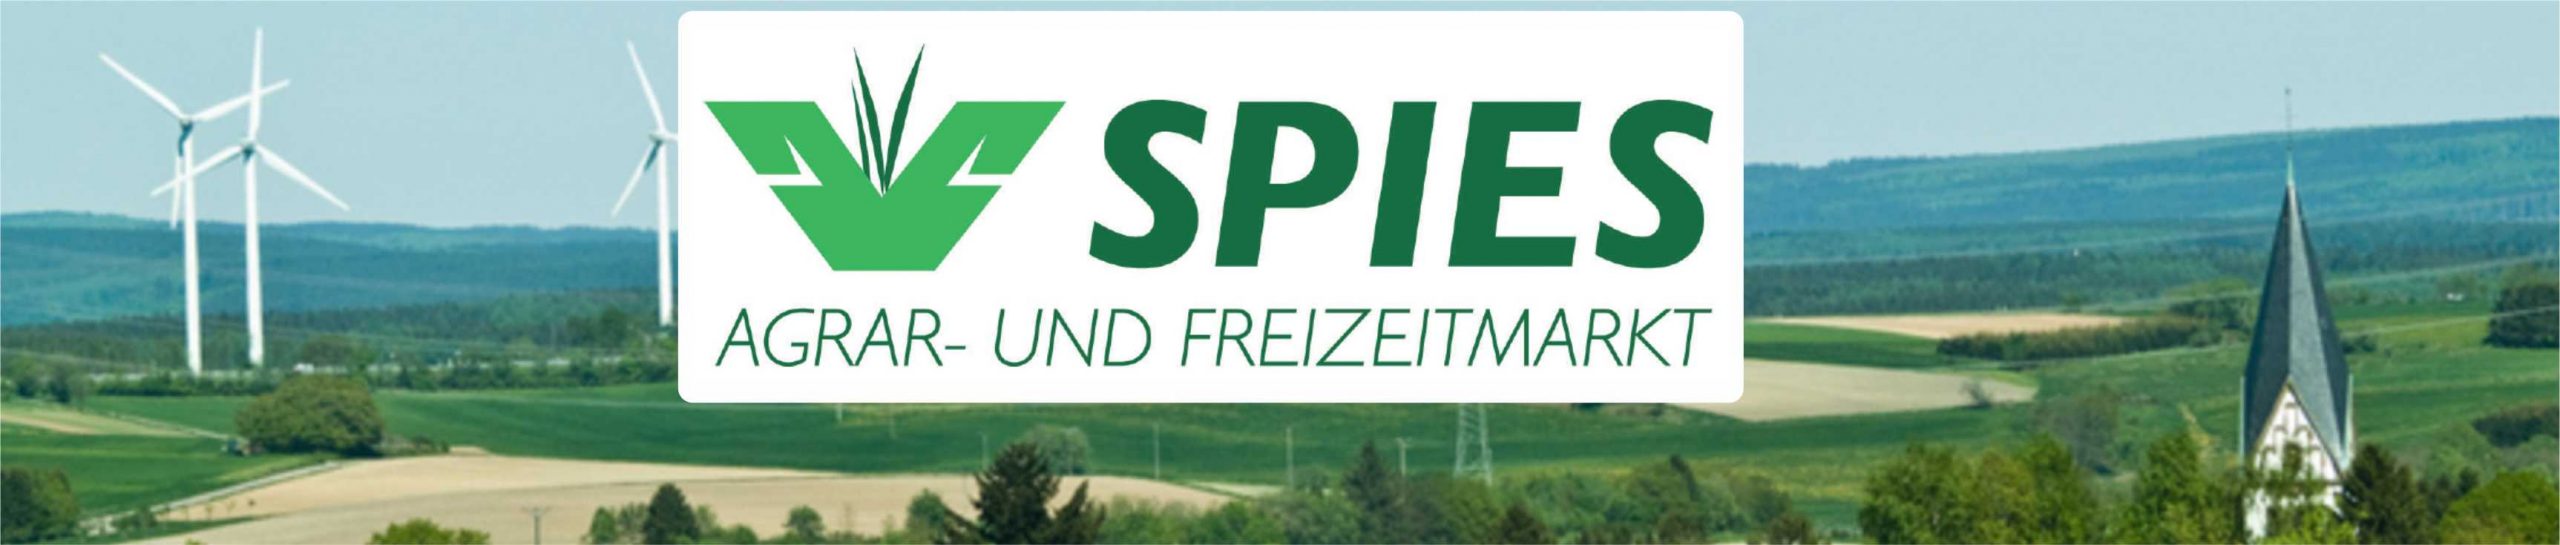 Agrar- und Freizeitmarkt Hans Spies - Hermeskeil